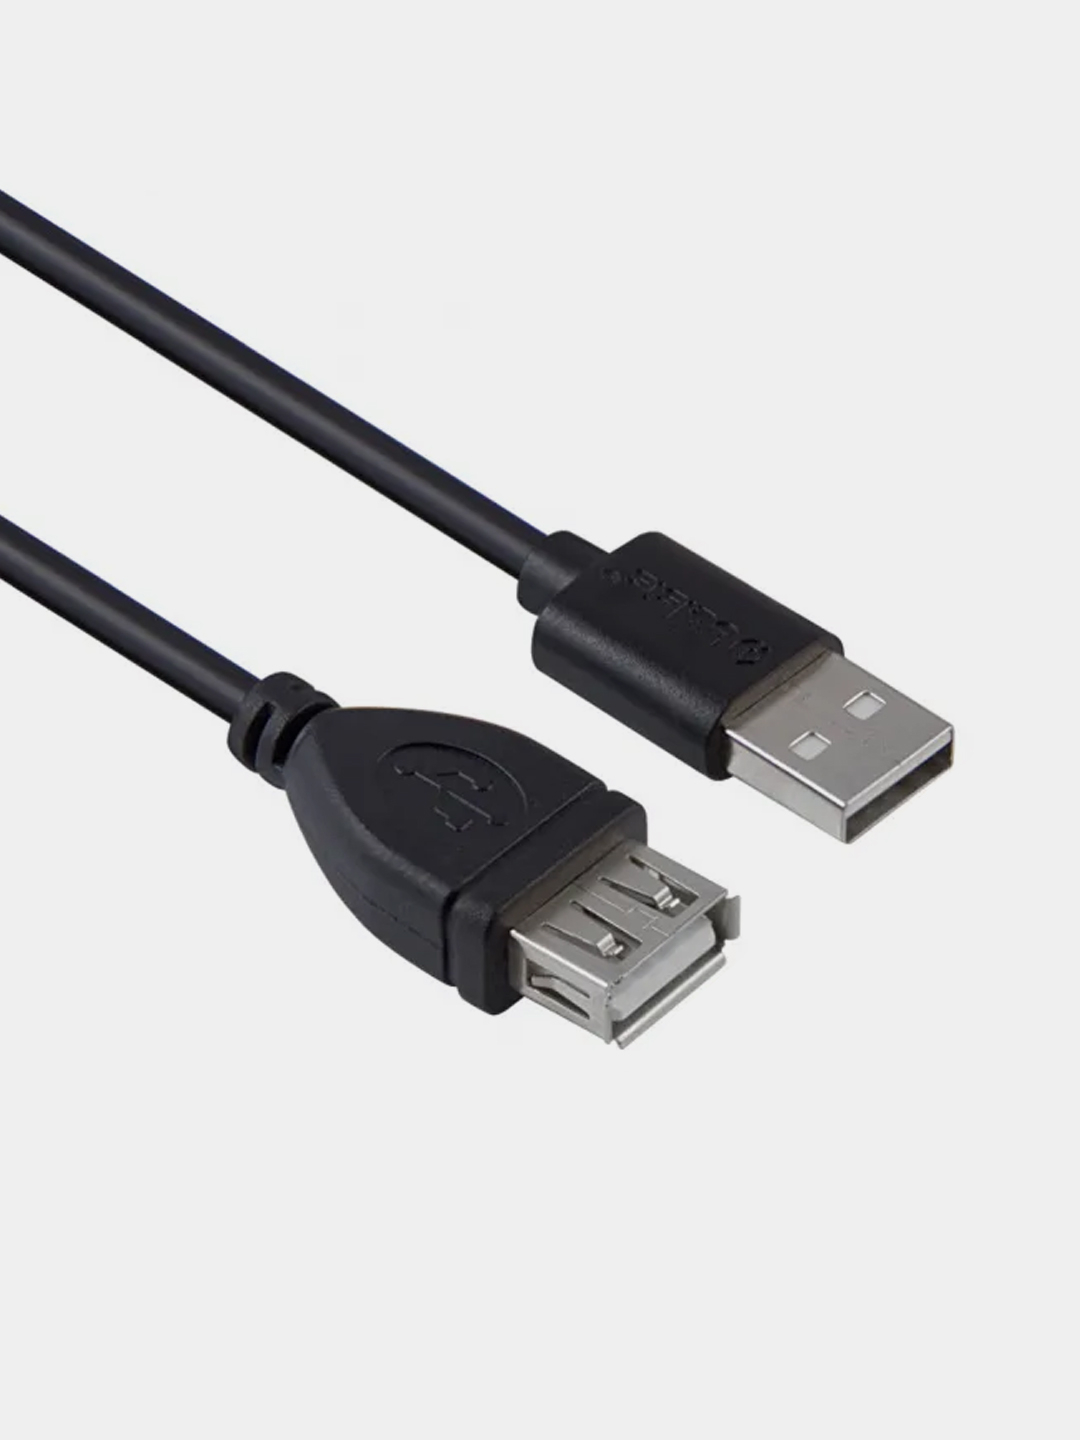 Удлинитель-кабель USB-соединение между компьютером и USB-аксессуарами мышь, клавиатура BW1405